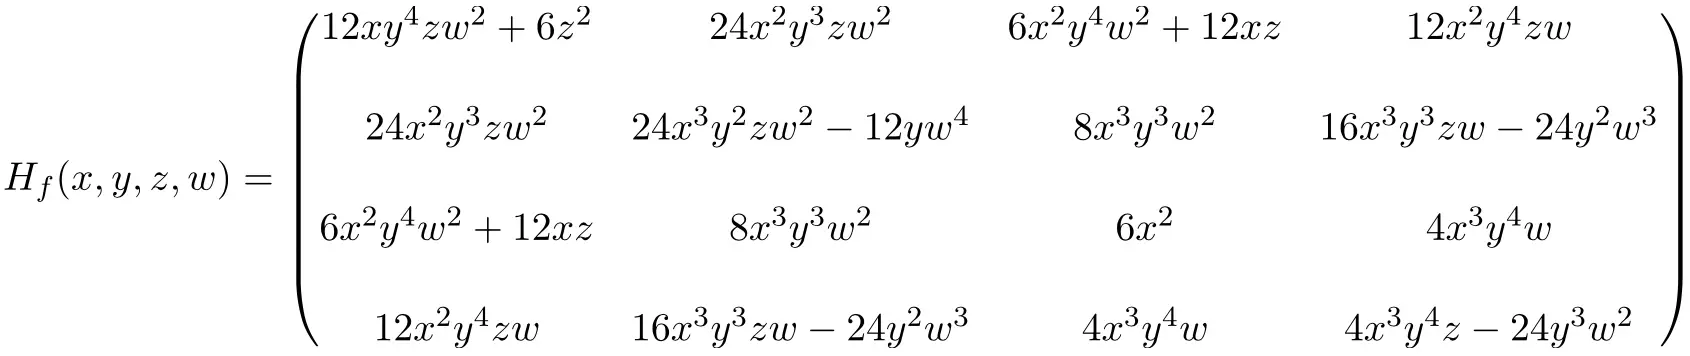 exemplo resolvido passo a passo de serapilheira ou matriz de serapilheira de dimensão 4x4